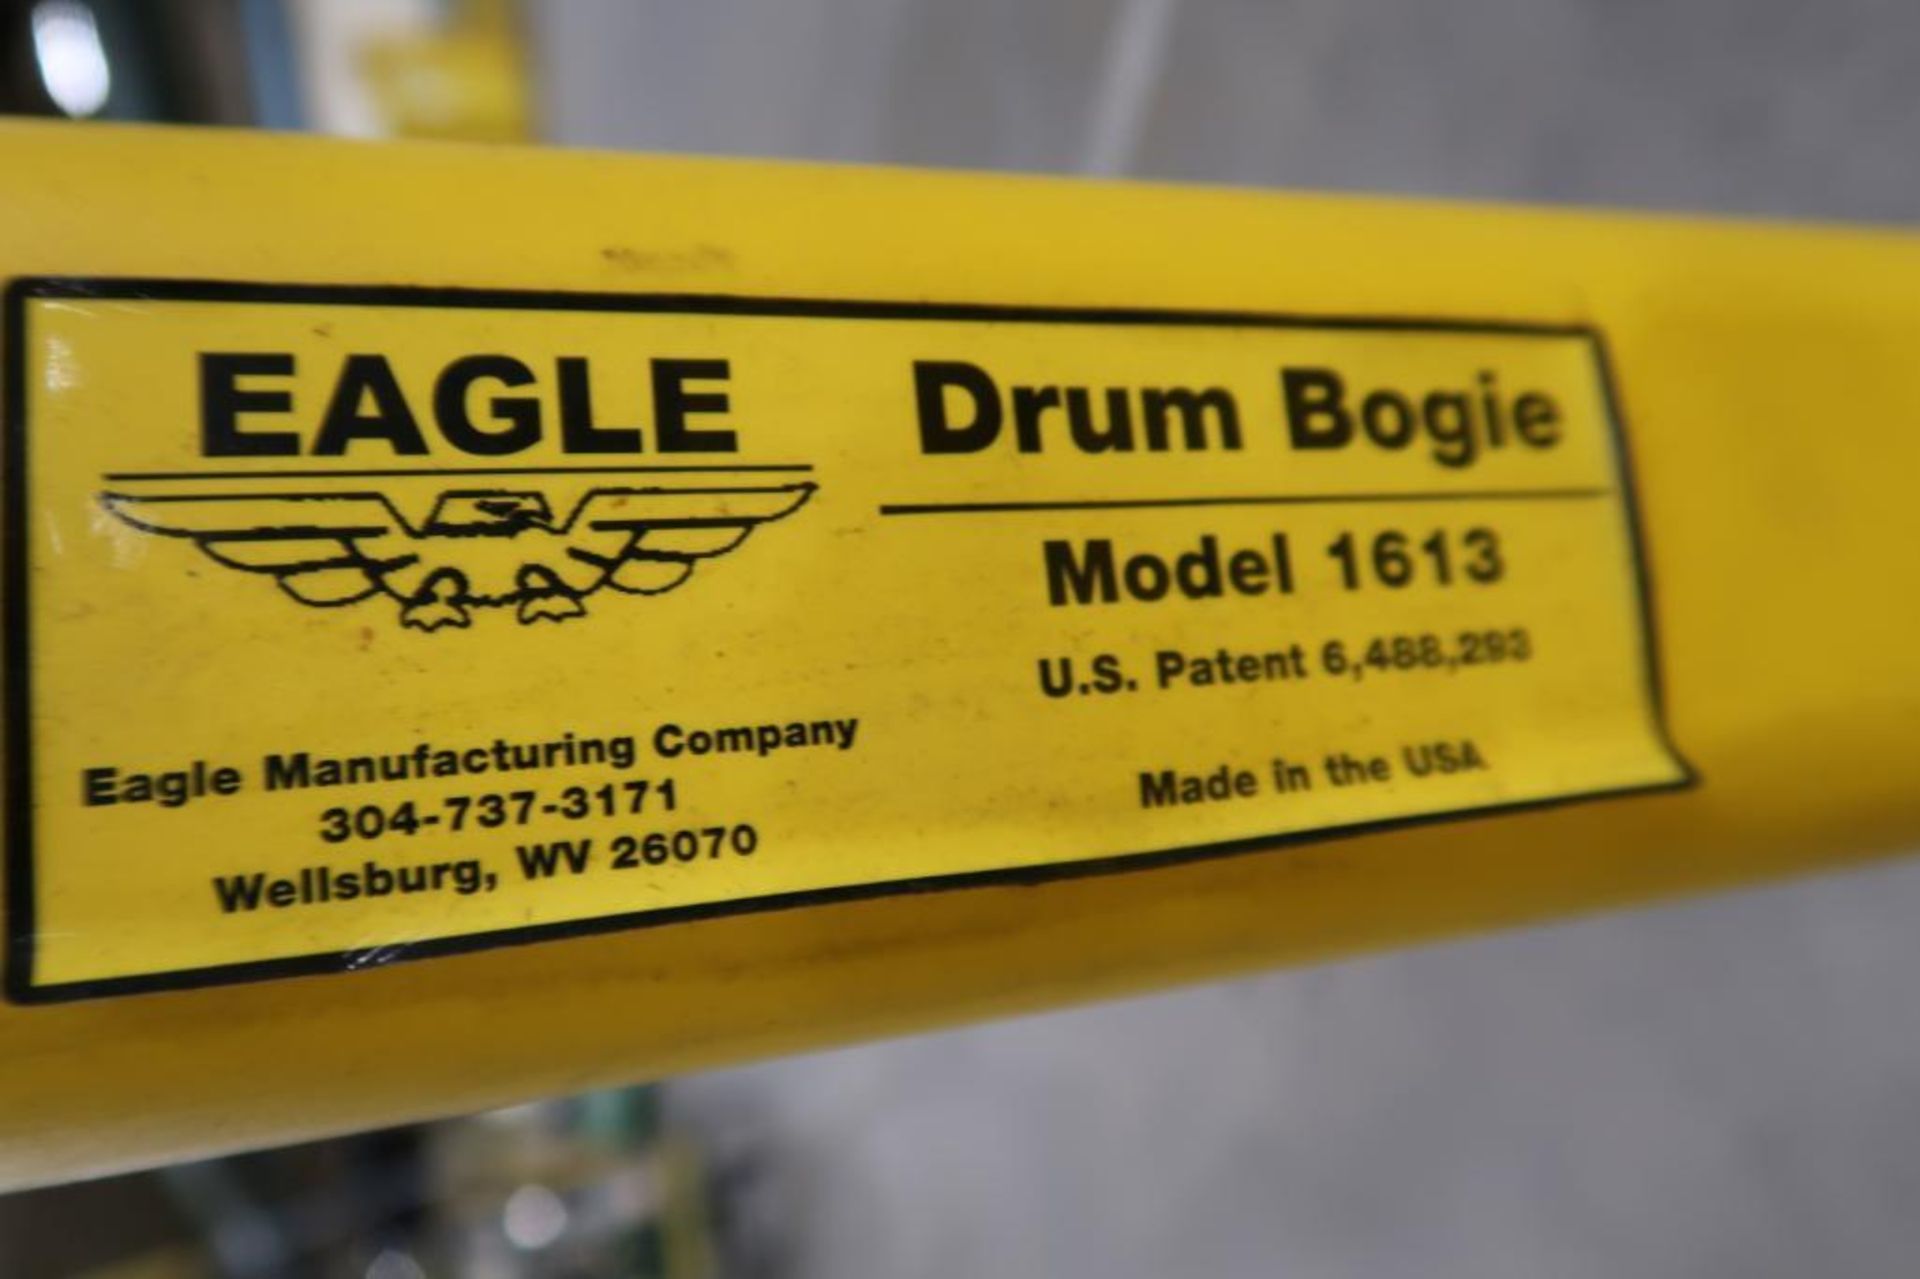 Eagle Model 1613 Drum Bogie - Image 2 of 3